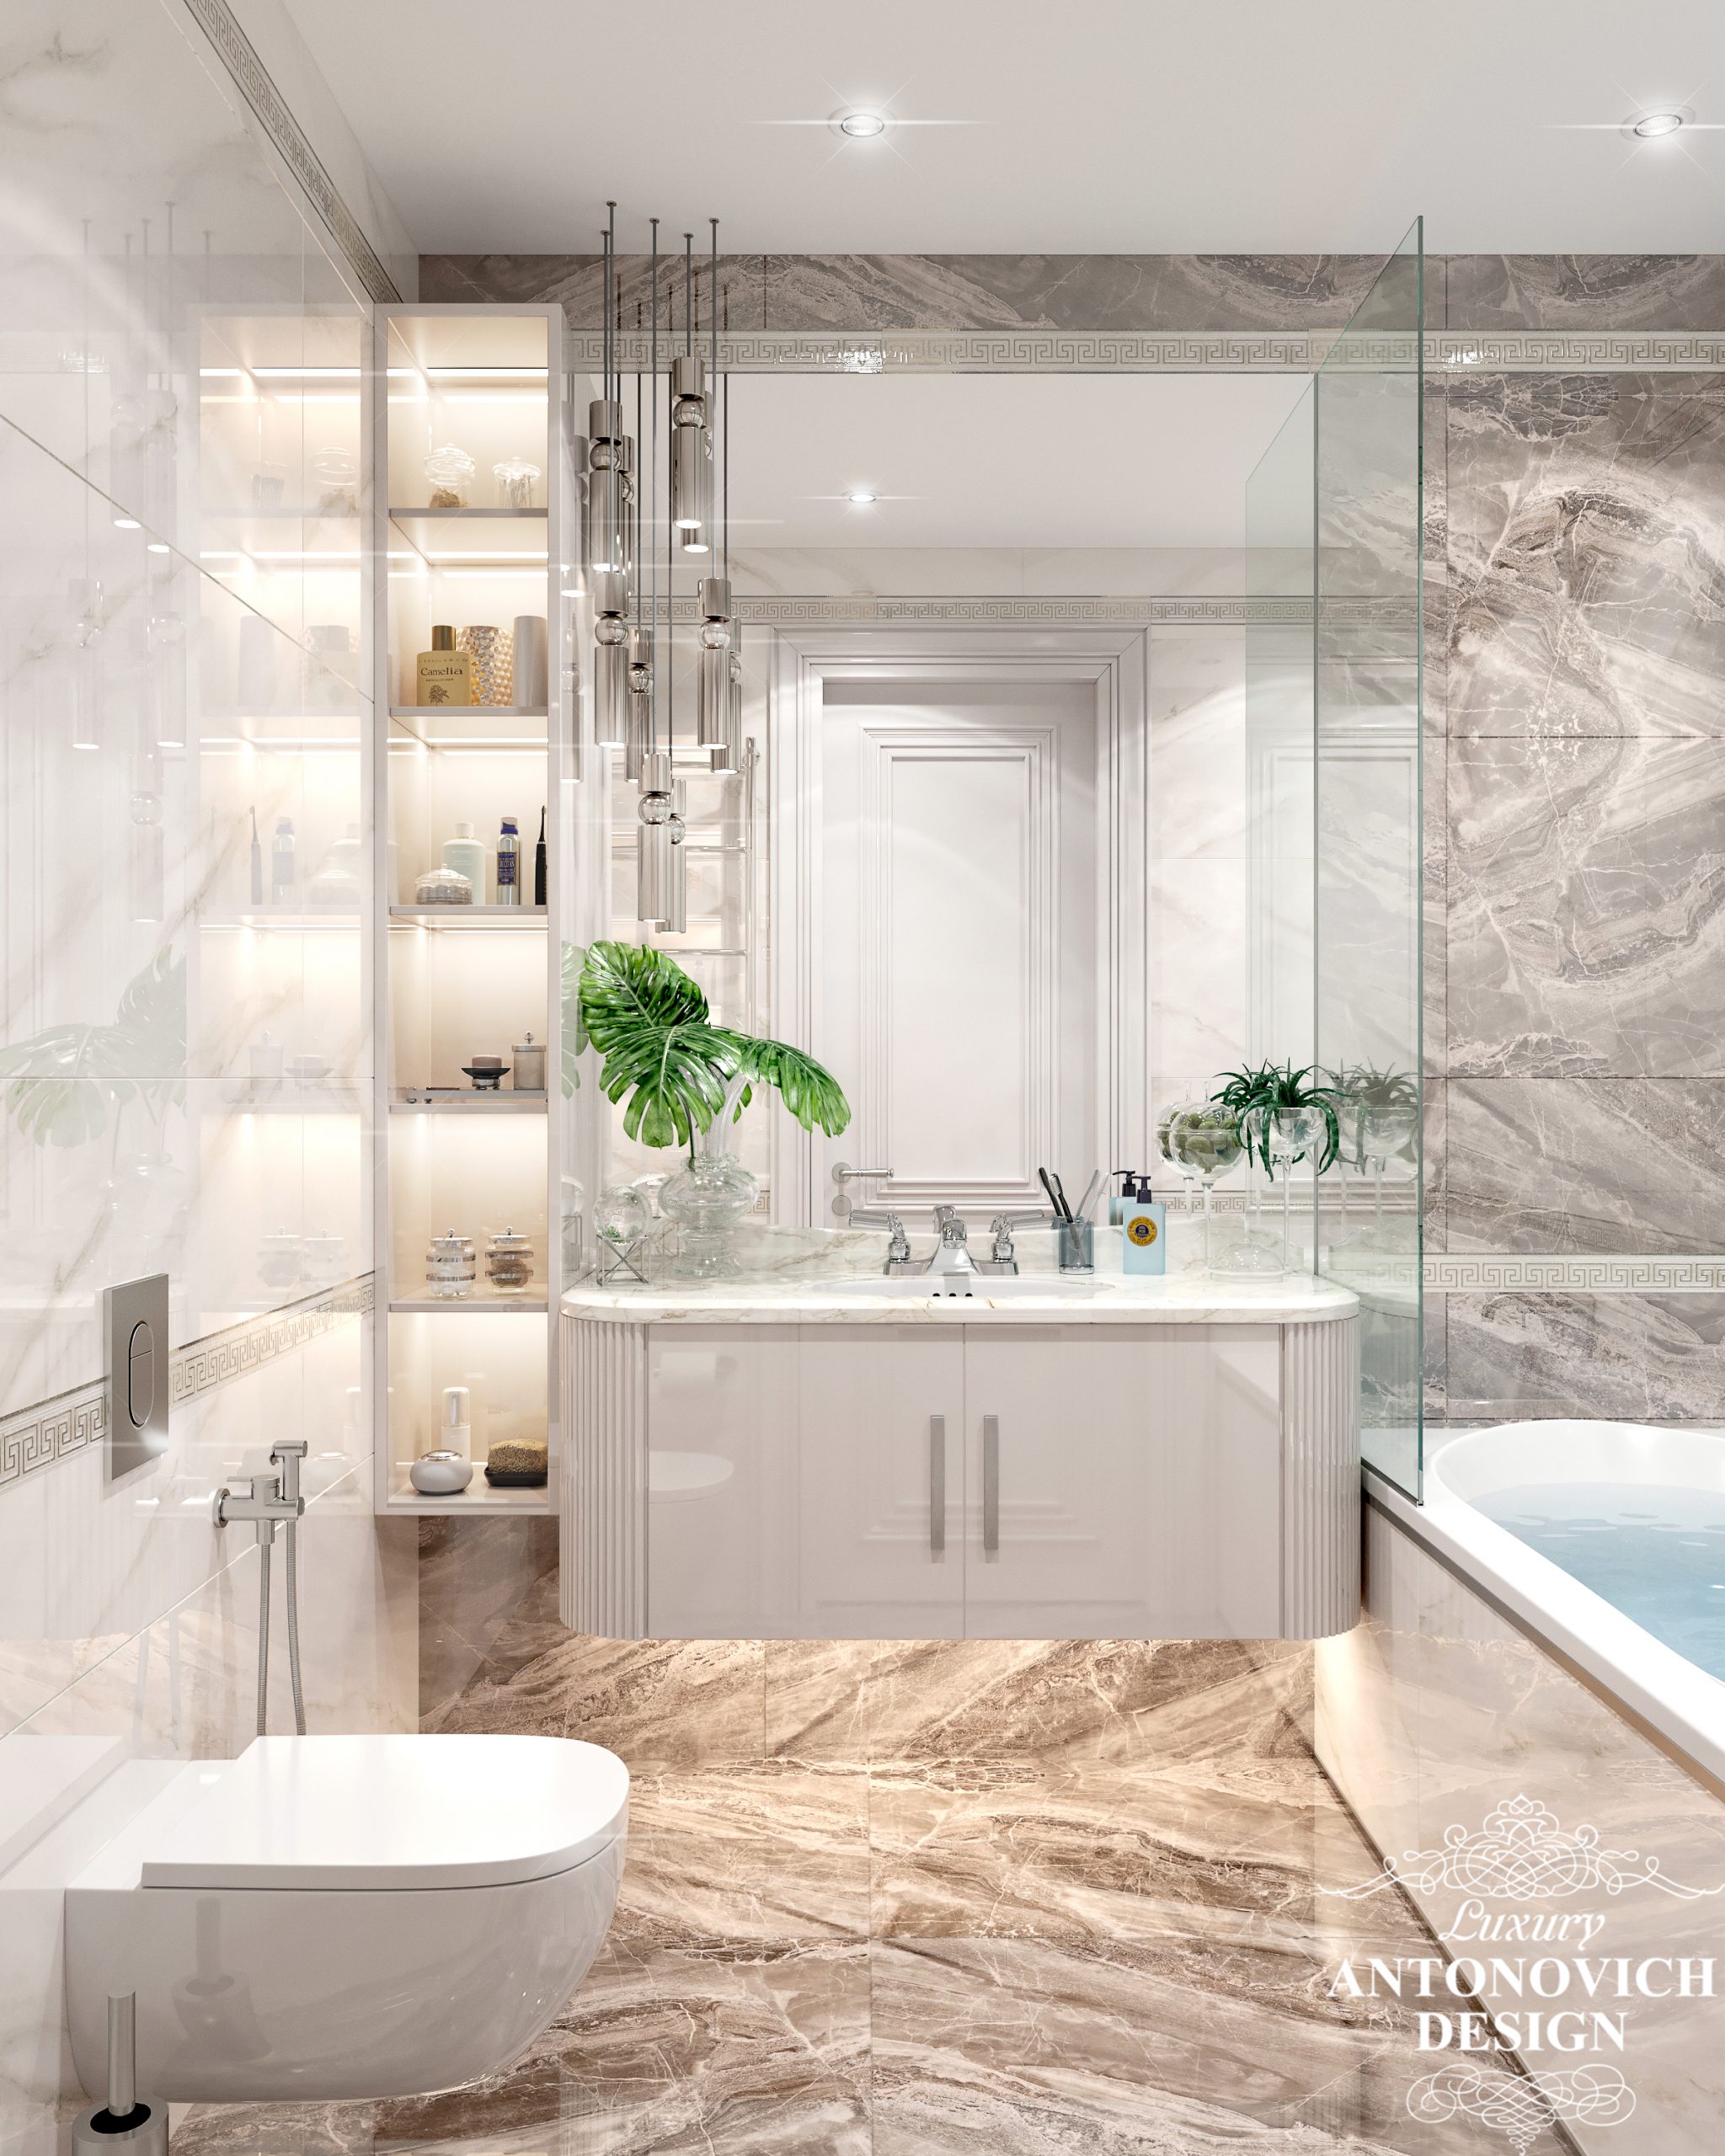 Итальянский мрамор и стильный современный декор в интерьере ванной комнаты